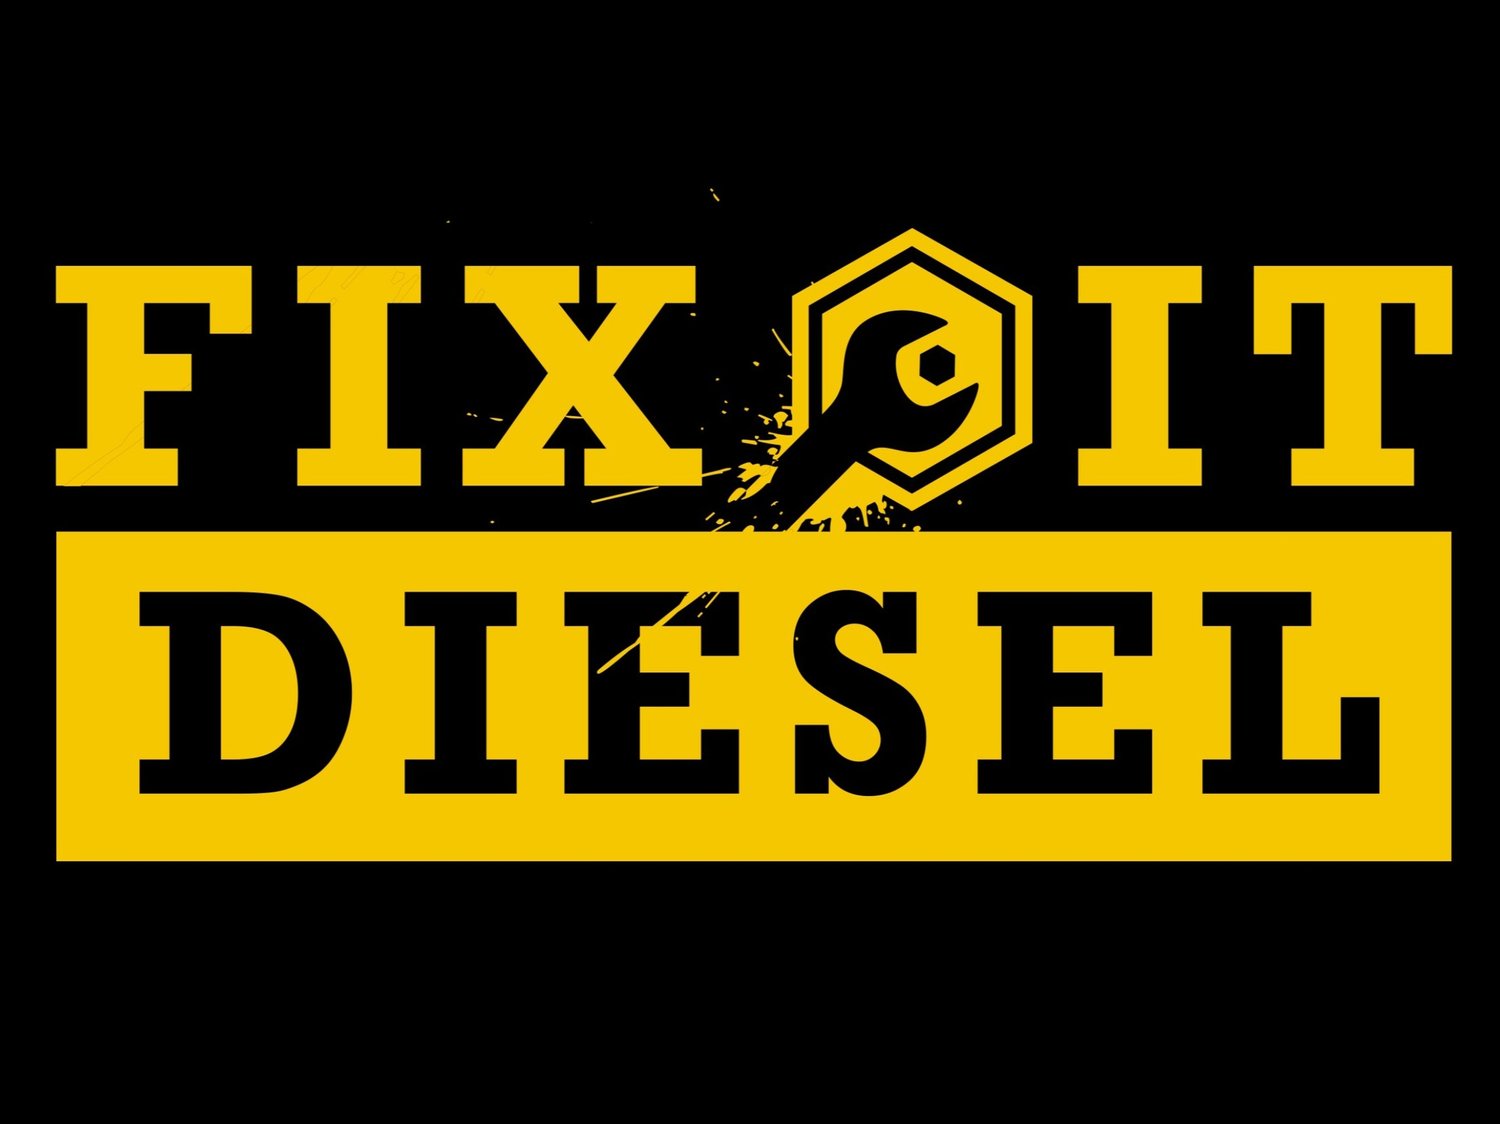 Fix-It Diesel